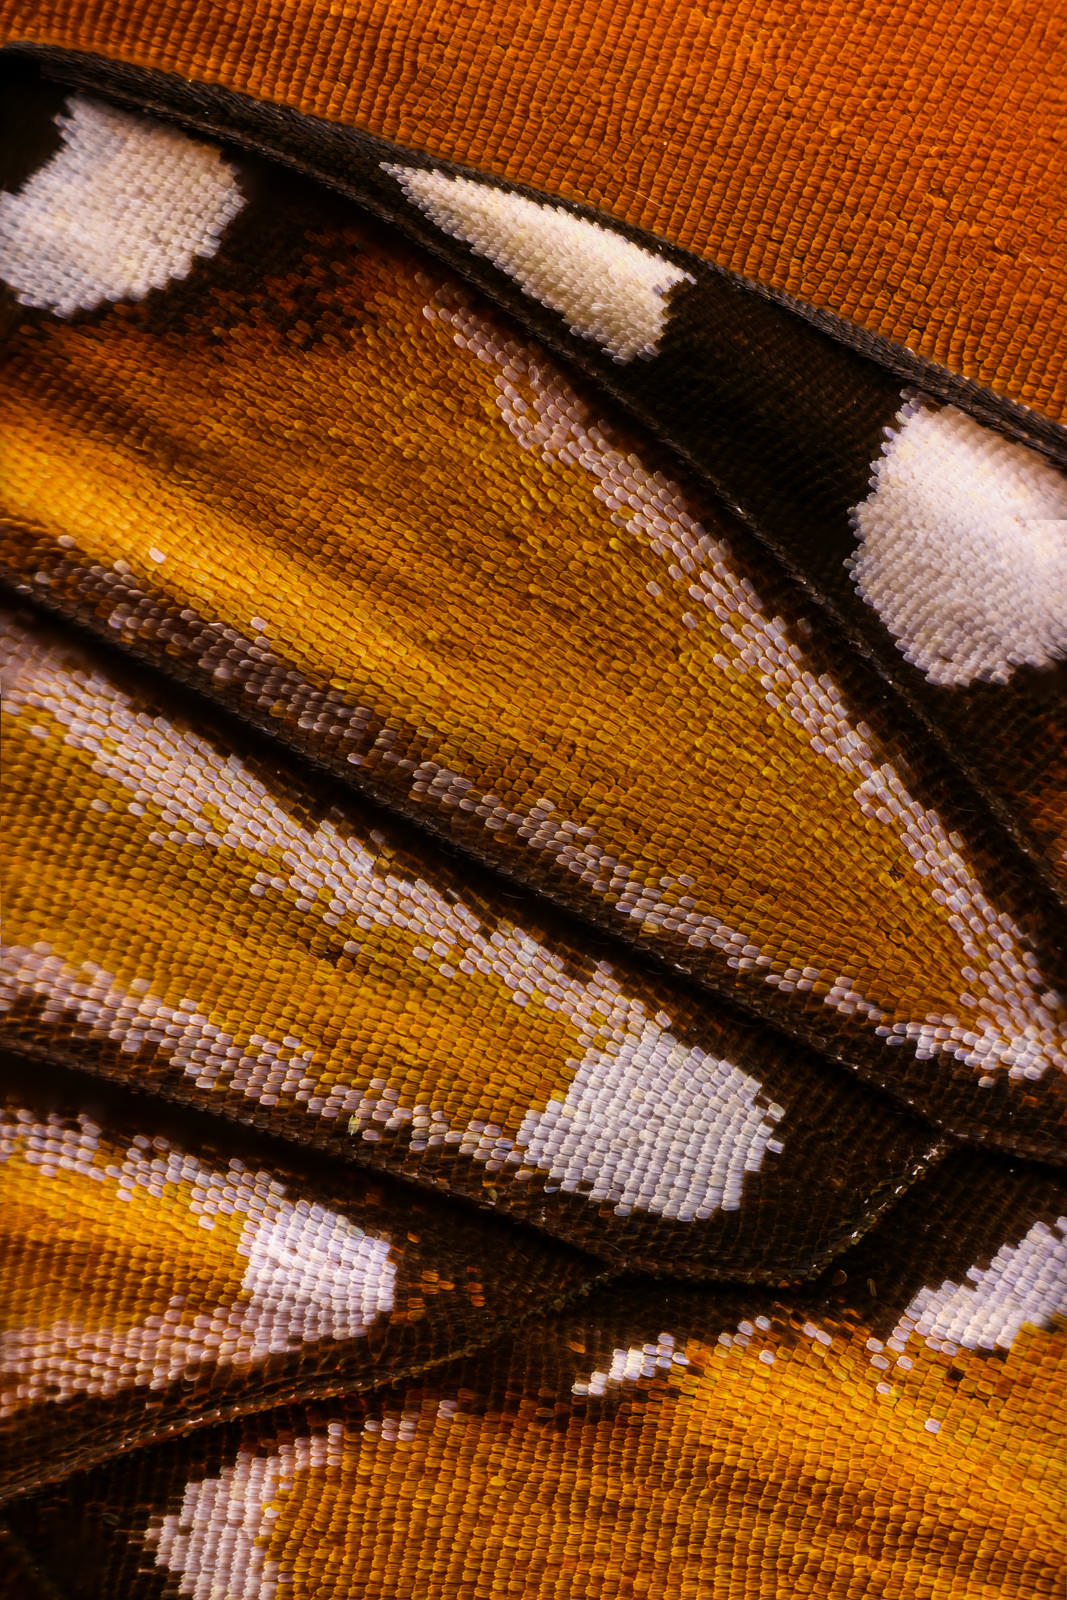 تصاویر ماکرو از بال پروانه